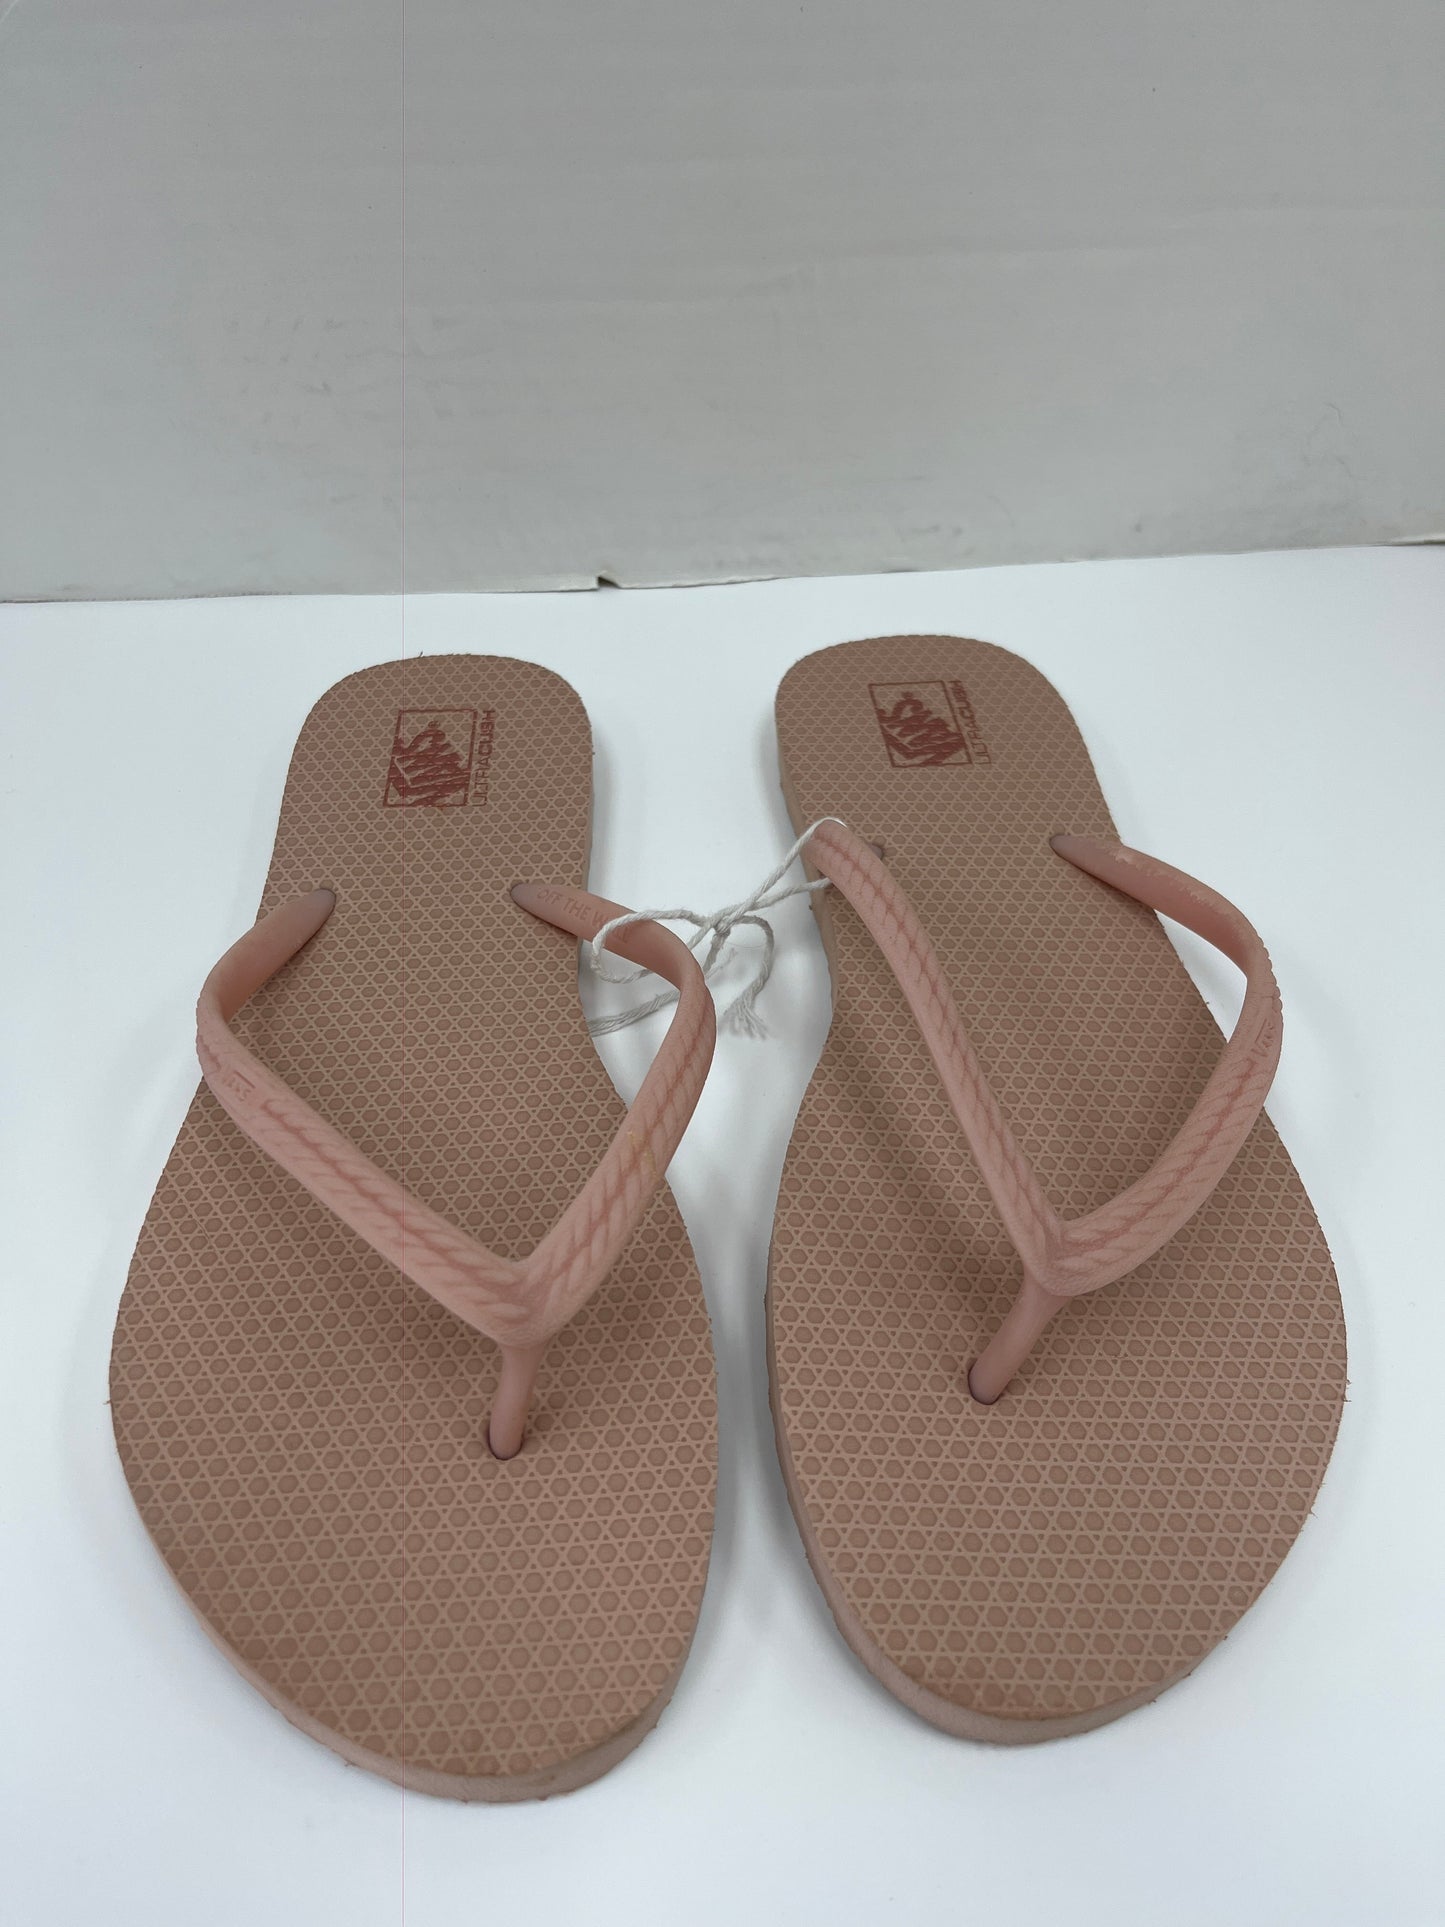 Sandals Flip Flops By Vans  Size: 10